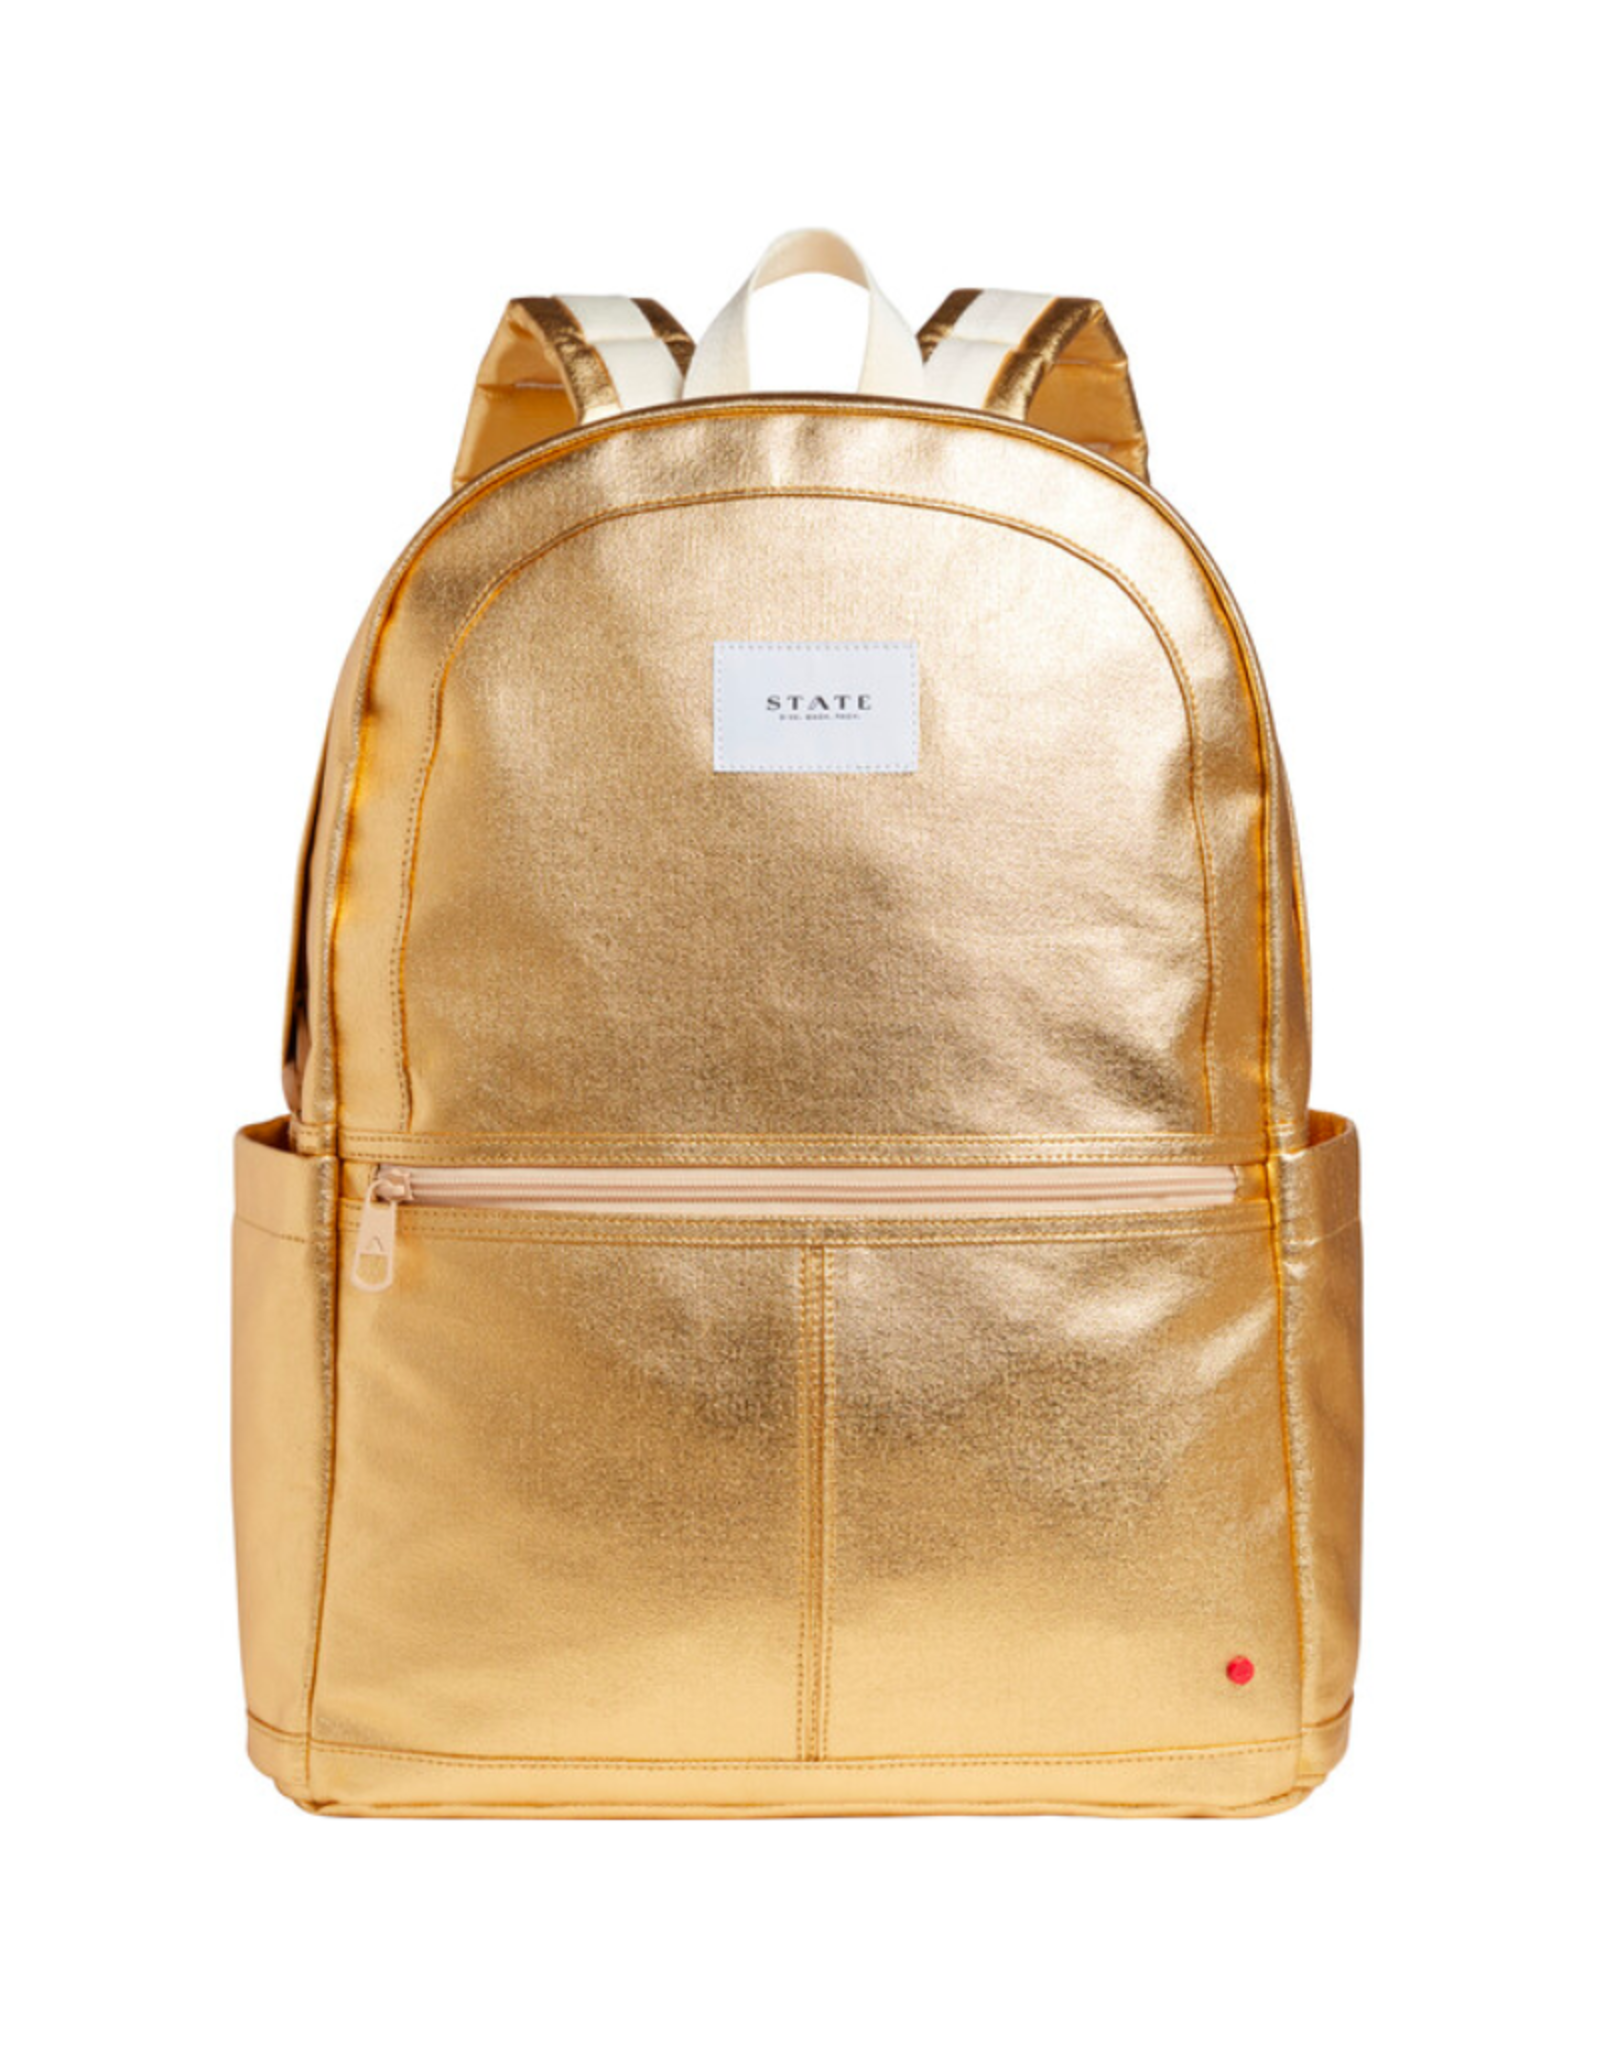 STATE Kane Kids Large Backpack - Gold Metallic